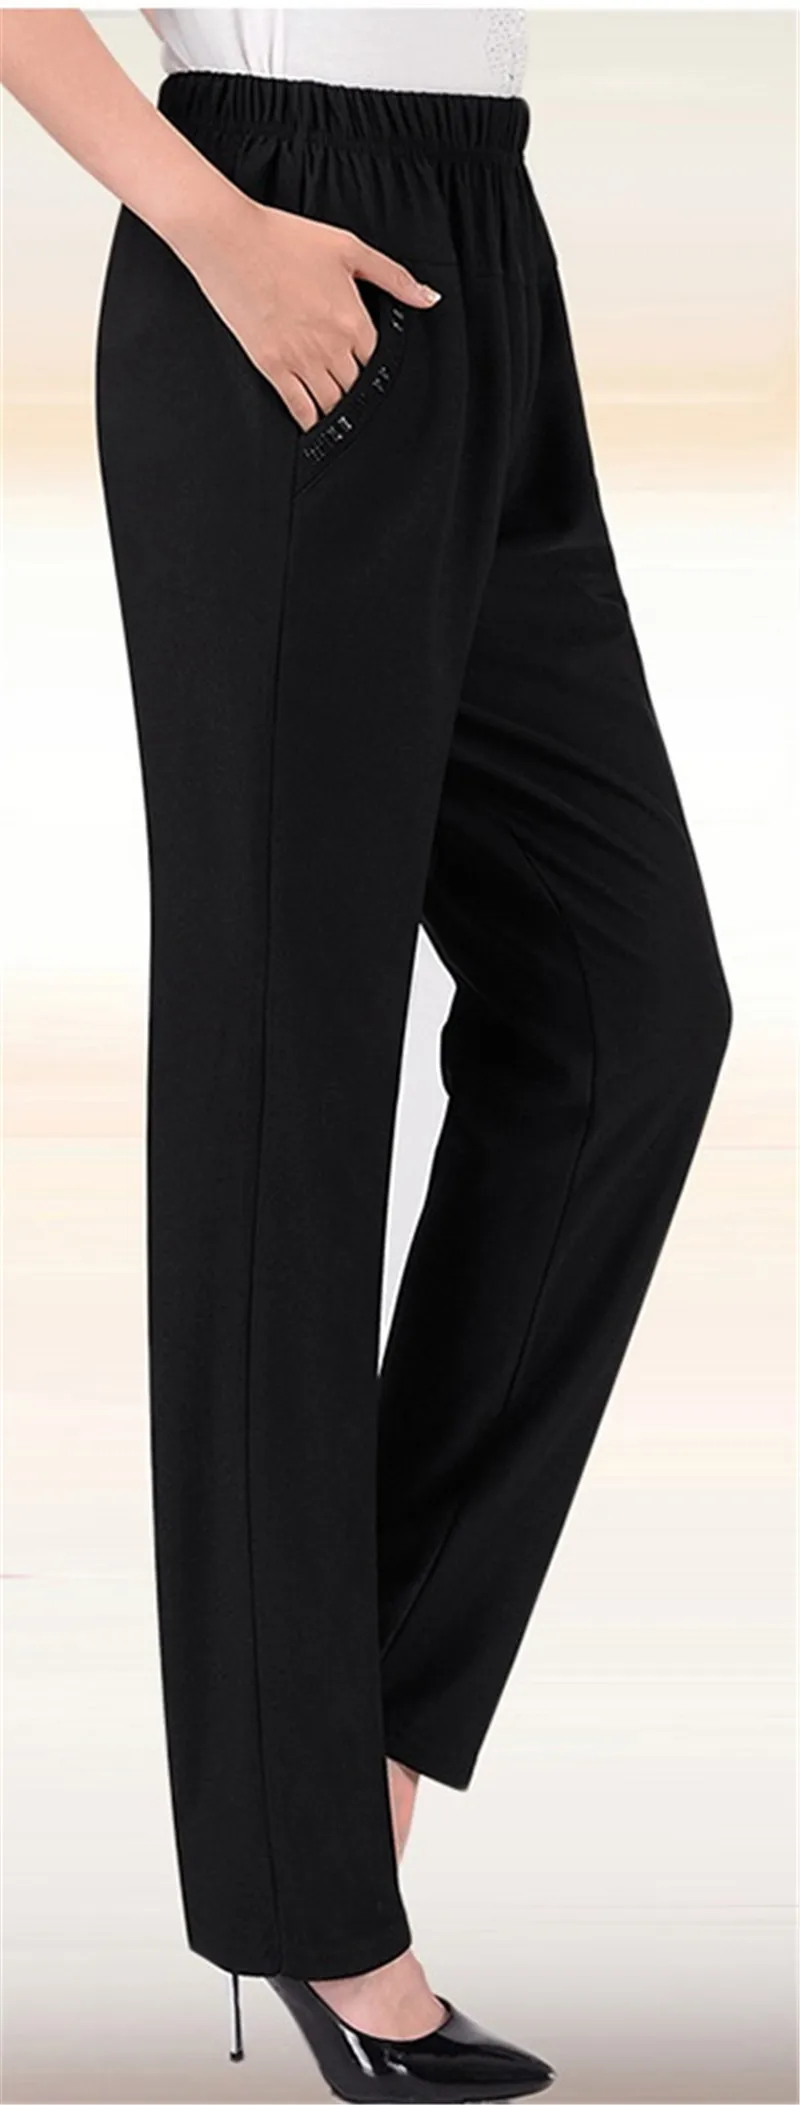 XL-8XL весенне-осенние прямые женские брюки с высокой эластичной талией, повседневные зимние Бархатные брюки среднего возраста размера плюс, черные